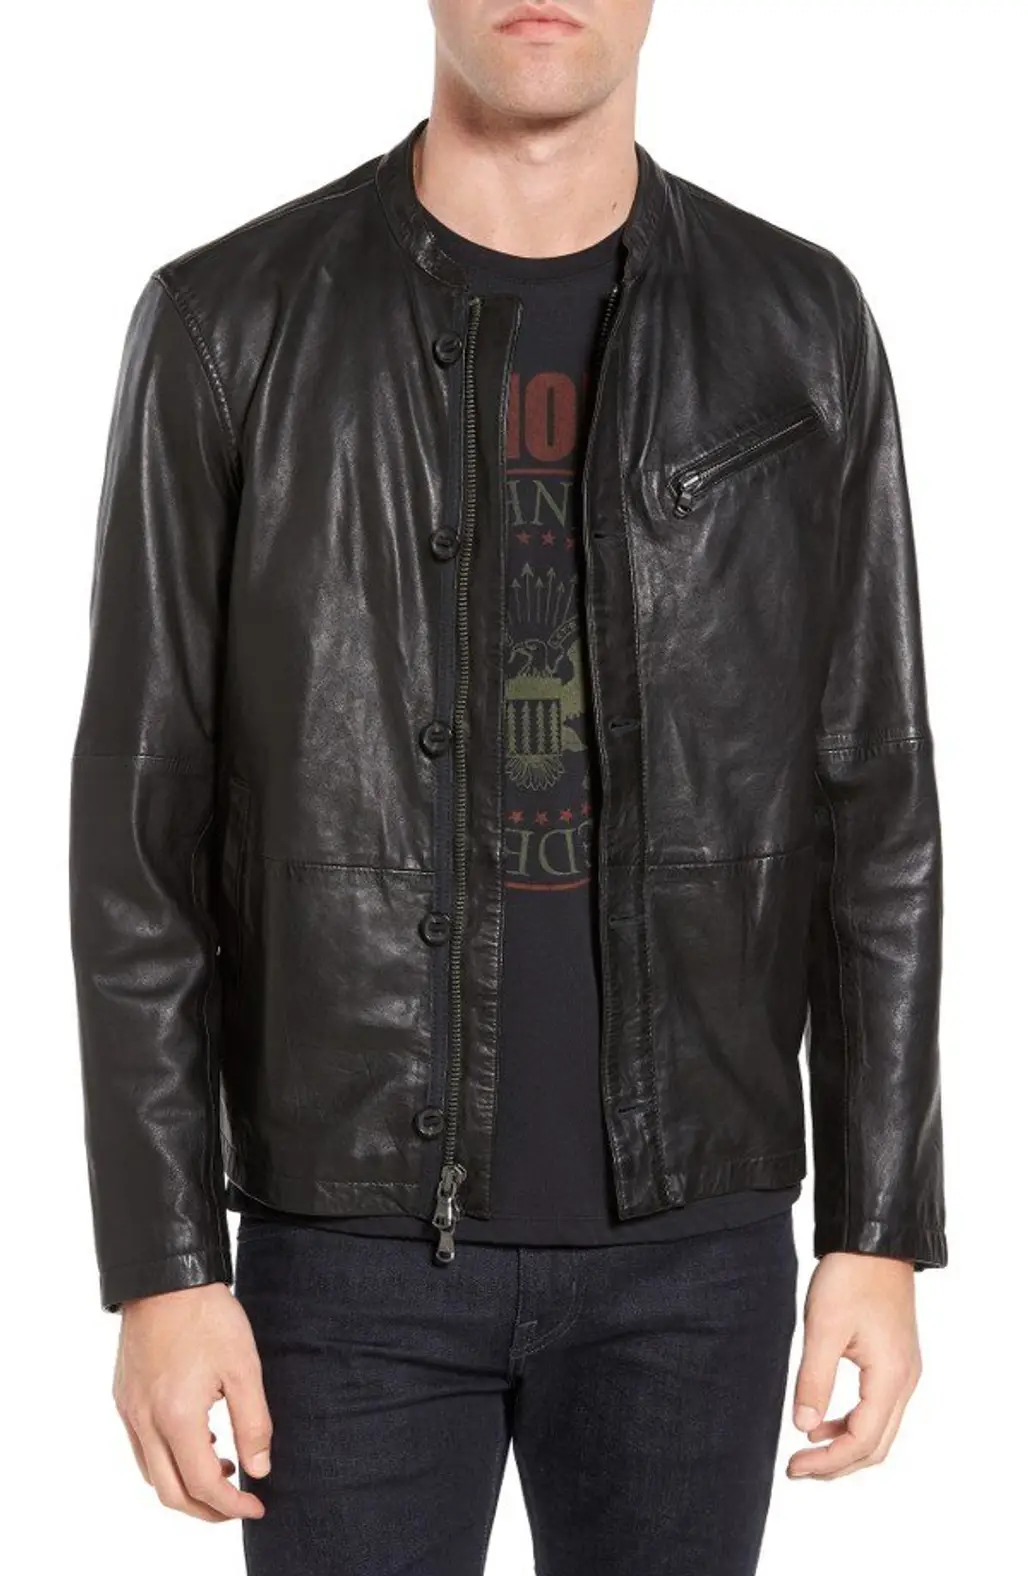 leather jacket,jacket,clothing,leather,textile,